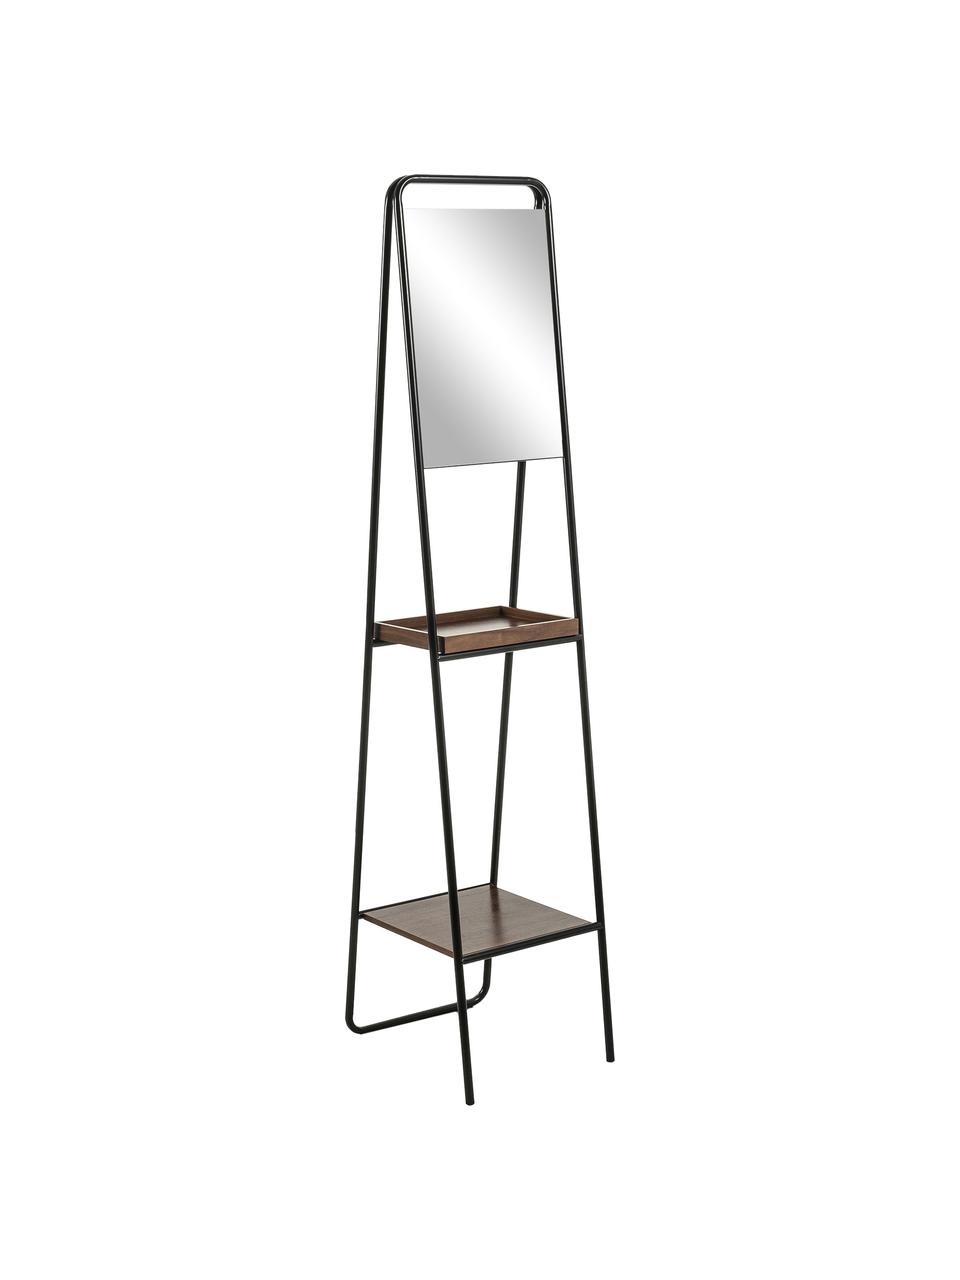 Standspiegel Benneth mit zwei Ablageflächen, Rahmen: Metall, beschichtet, Ablagefläche: Walnussholz, Spiegelfläche: Spiegelglas, Schwarz, 35 x 164 cm